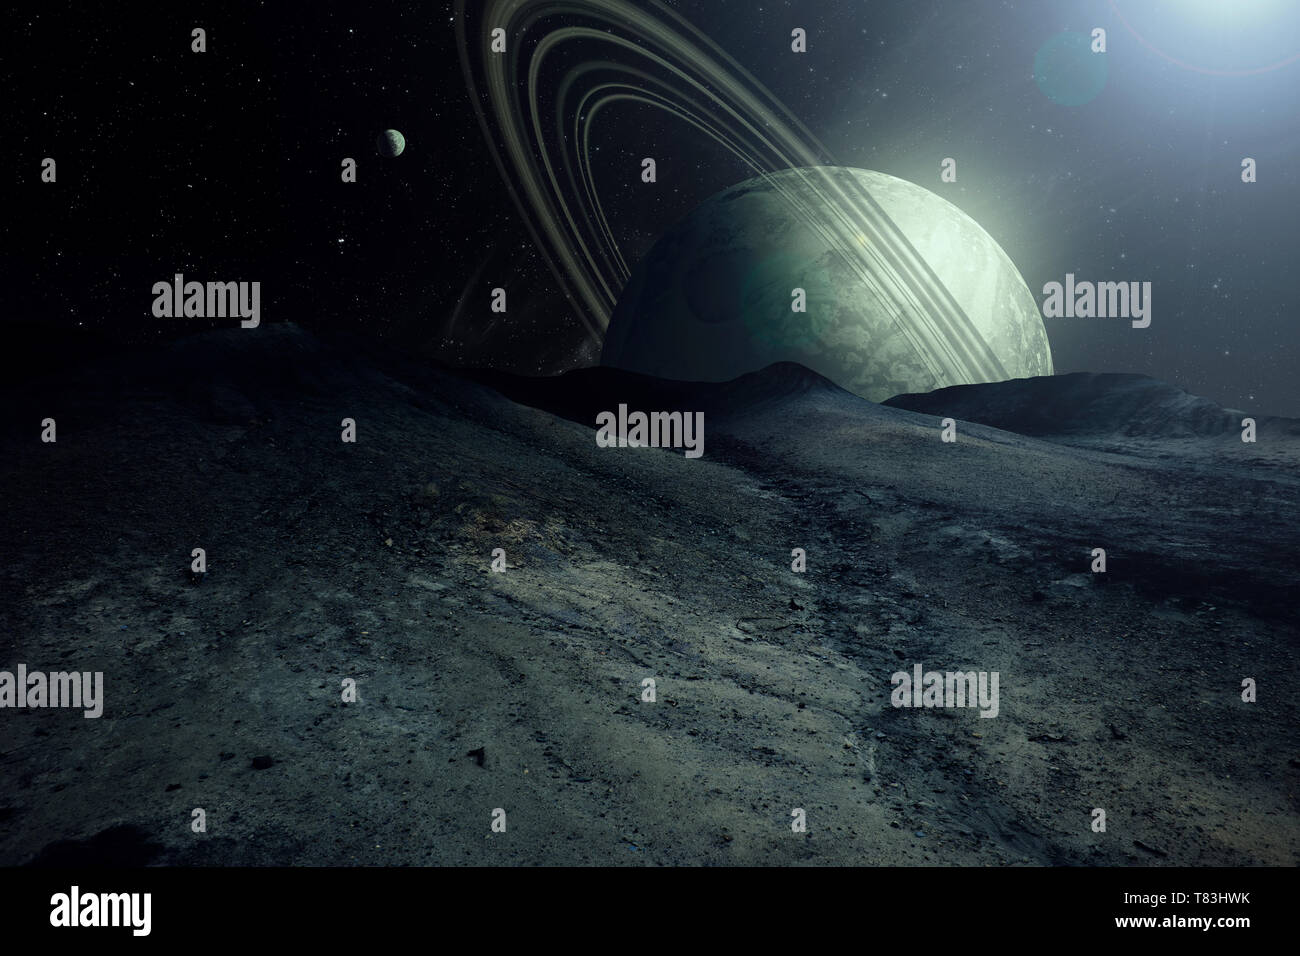 Planeta alienígena en el paisaje con los planetas y lunas en el cielo, la exploración espacial ilustración surrealista Foto de stock